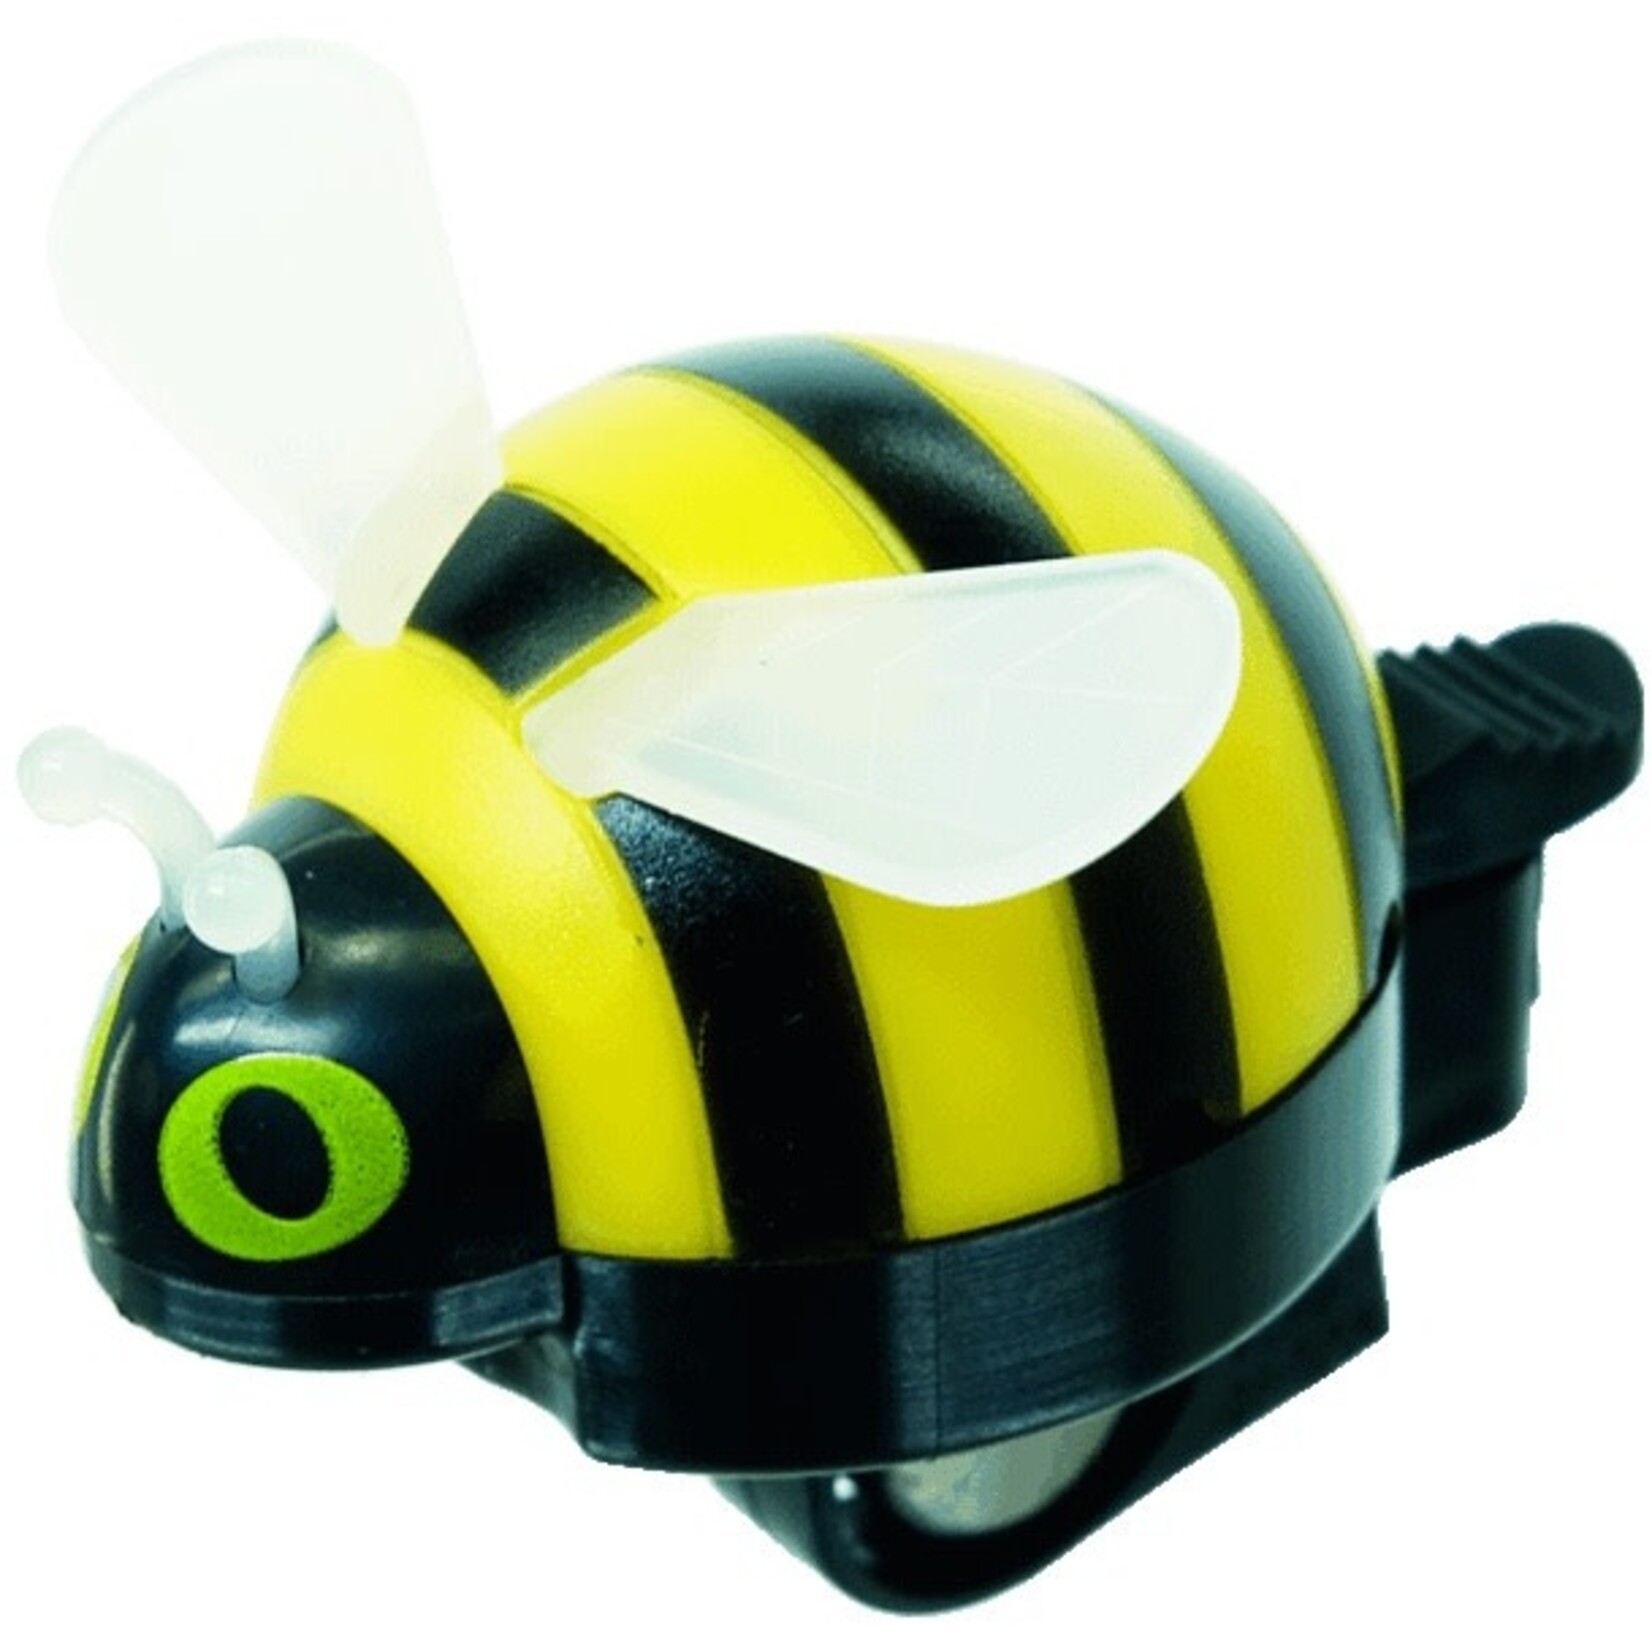 49N 49N Bumblebee Bell Yellow